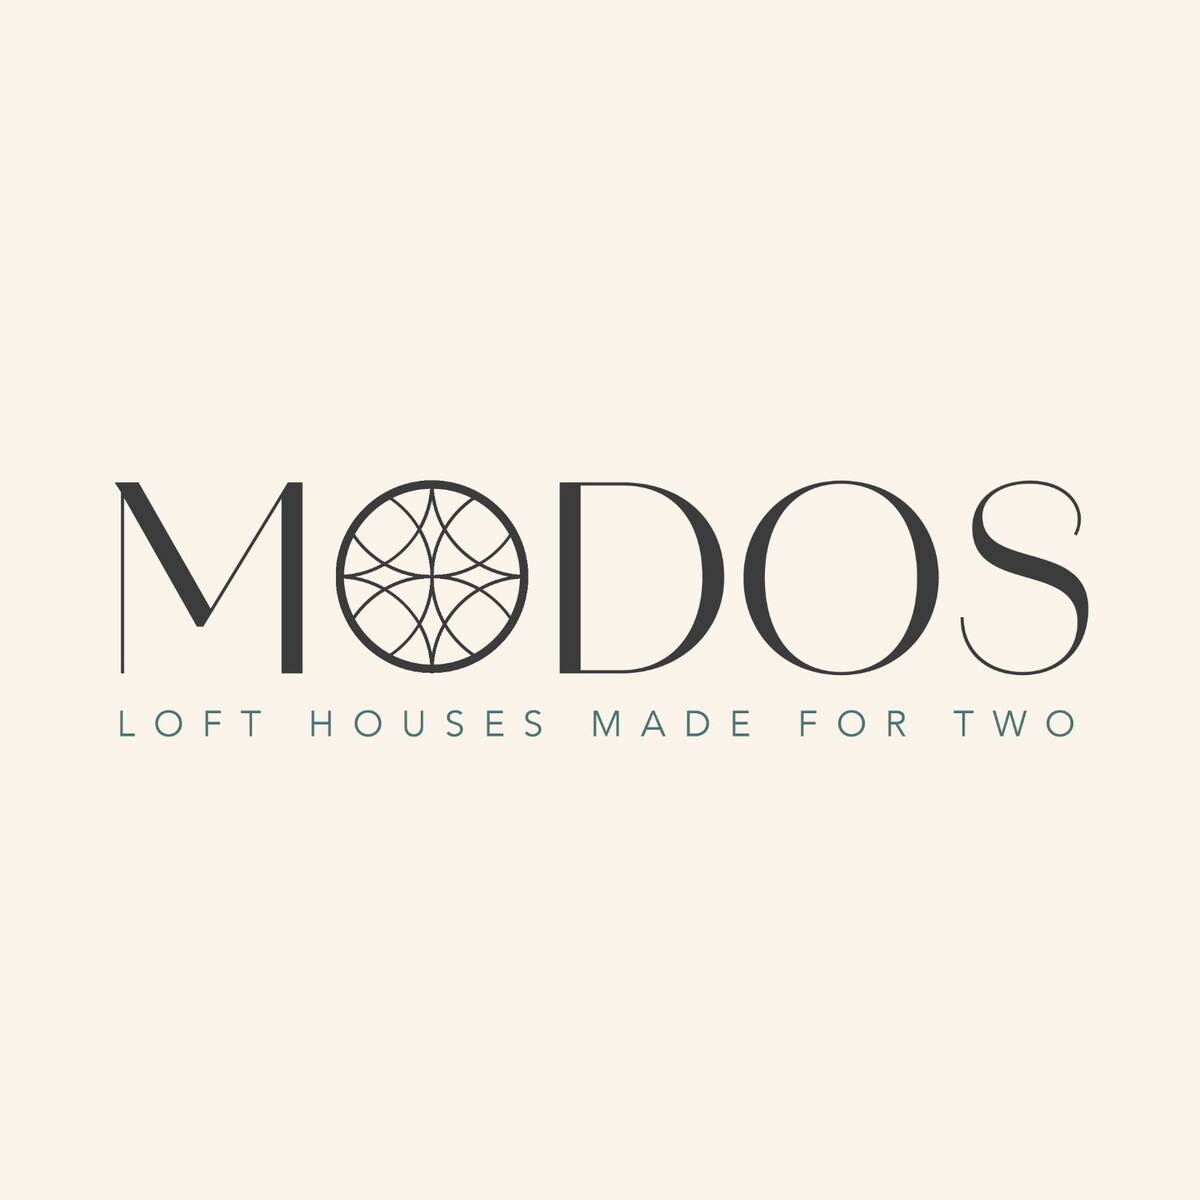 modos_loft_house